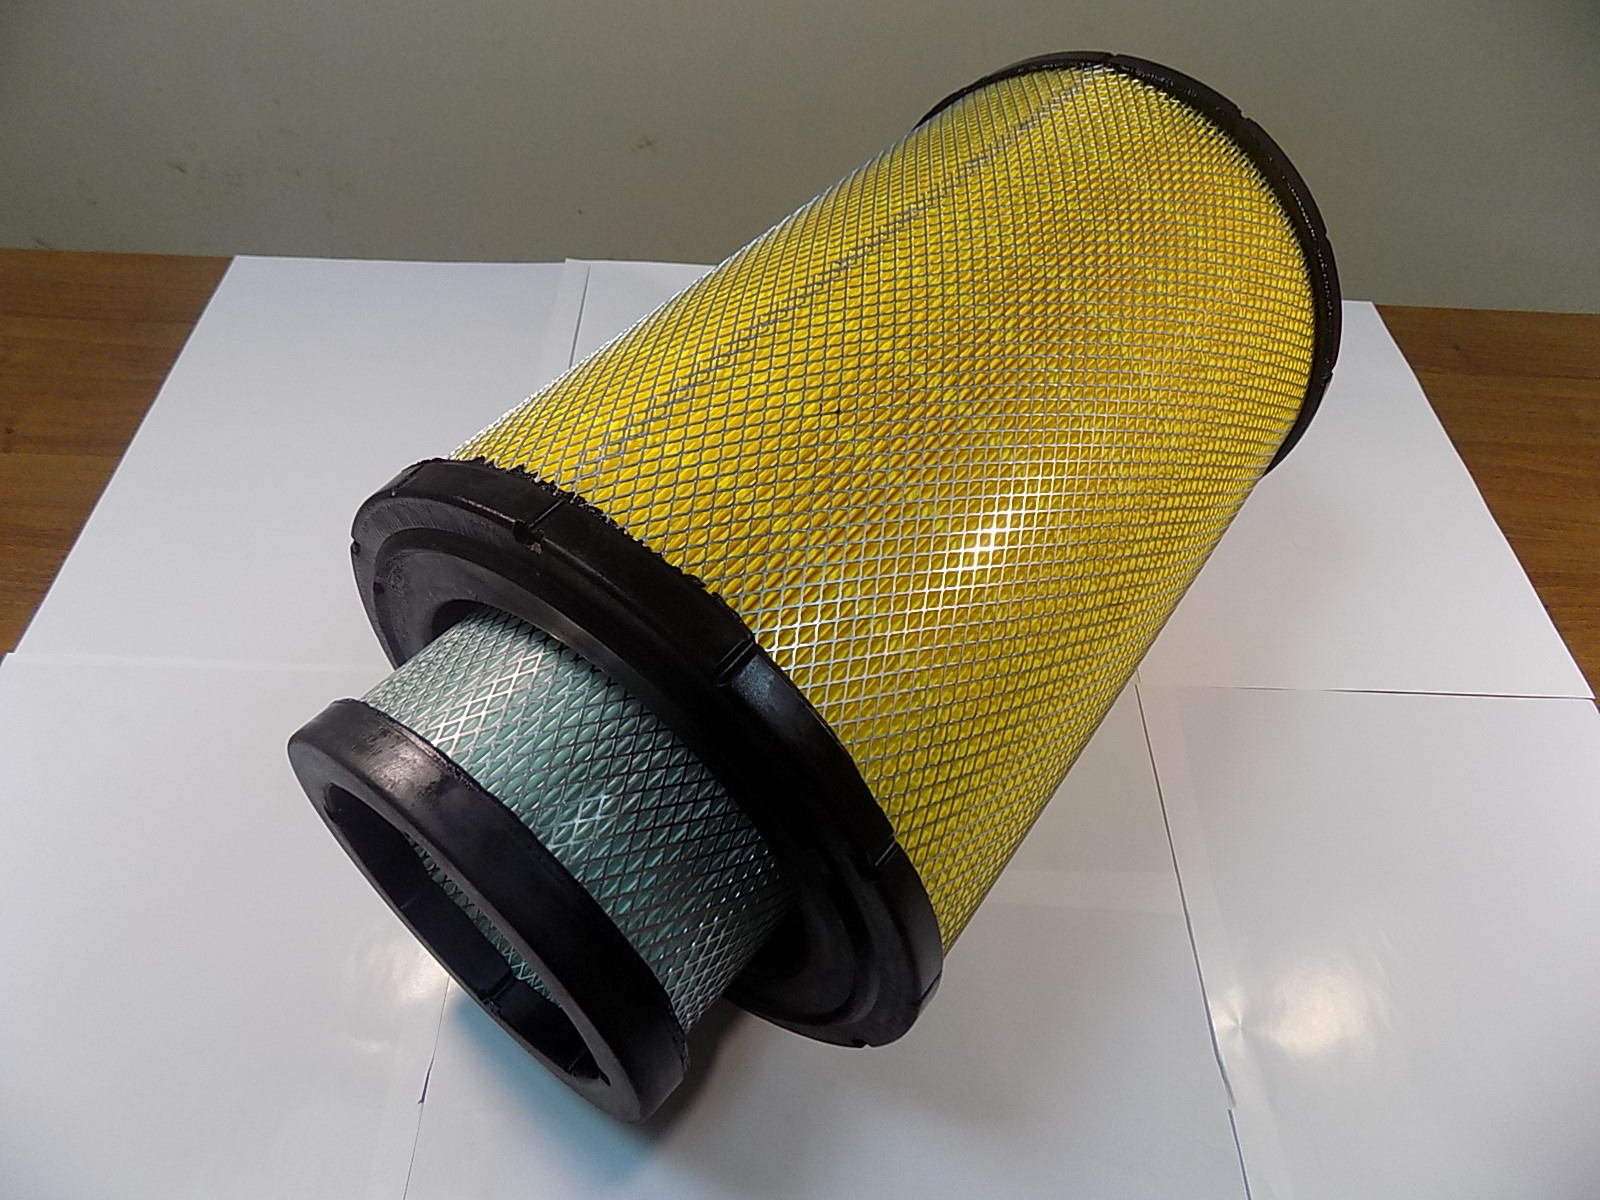 Фильтр воздушный двойной цилиндрический (глухой торец) TDW 339.353 6LT (Ф1-320х210х460/Ф2-200х157х435) /Air filter